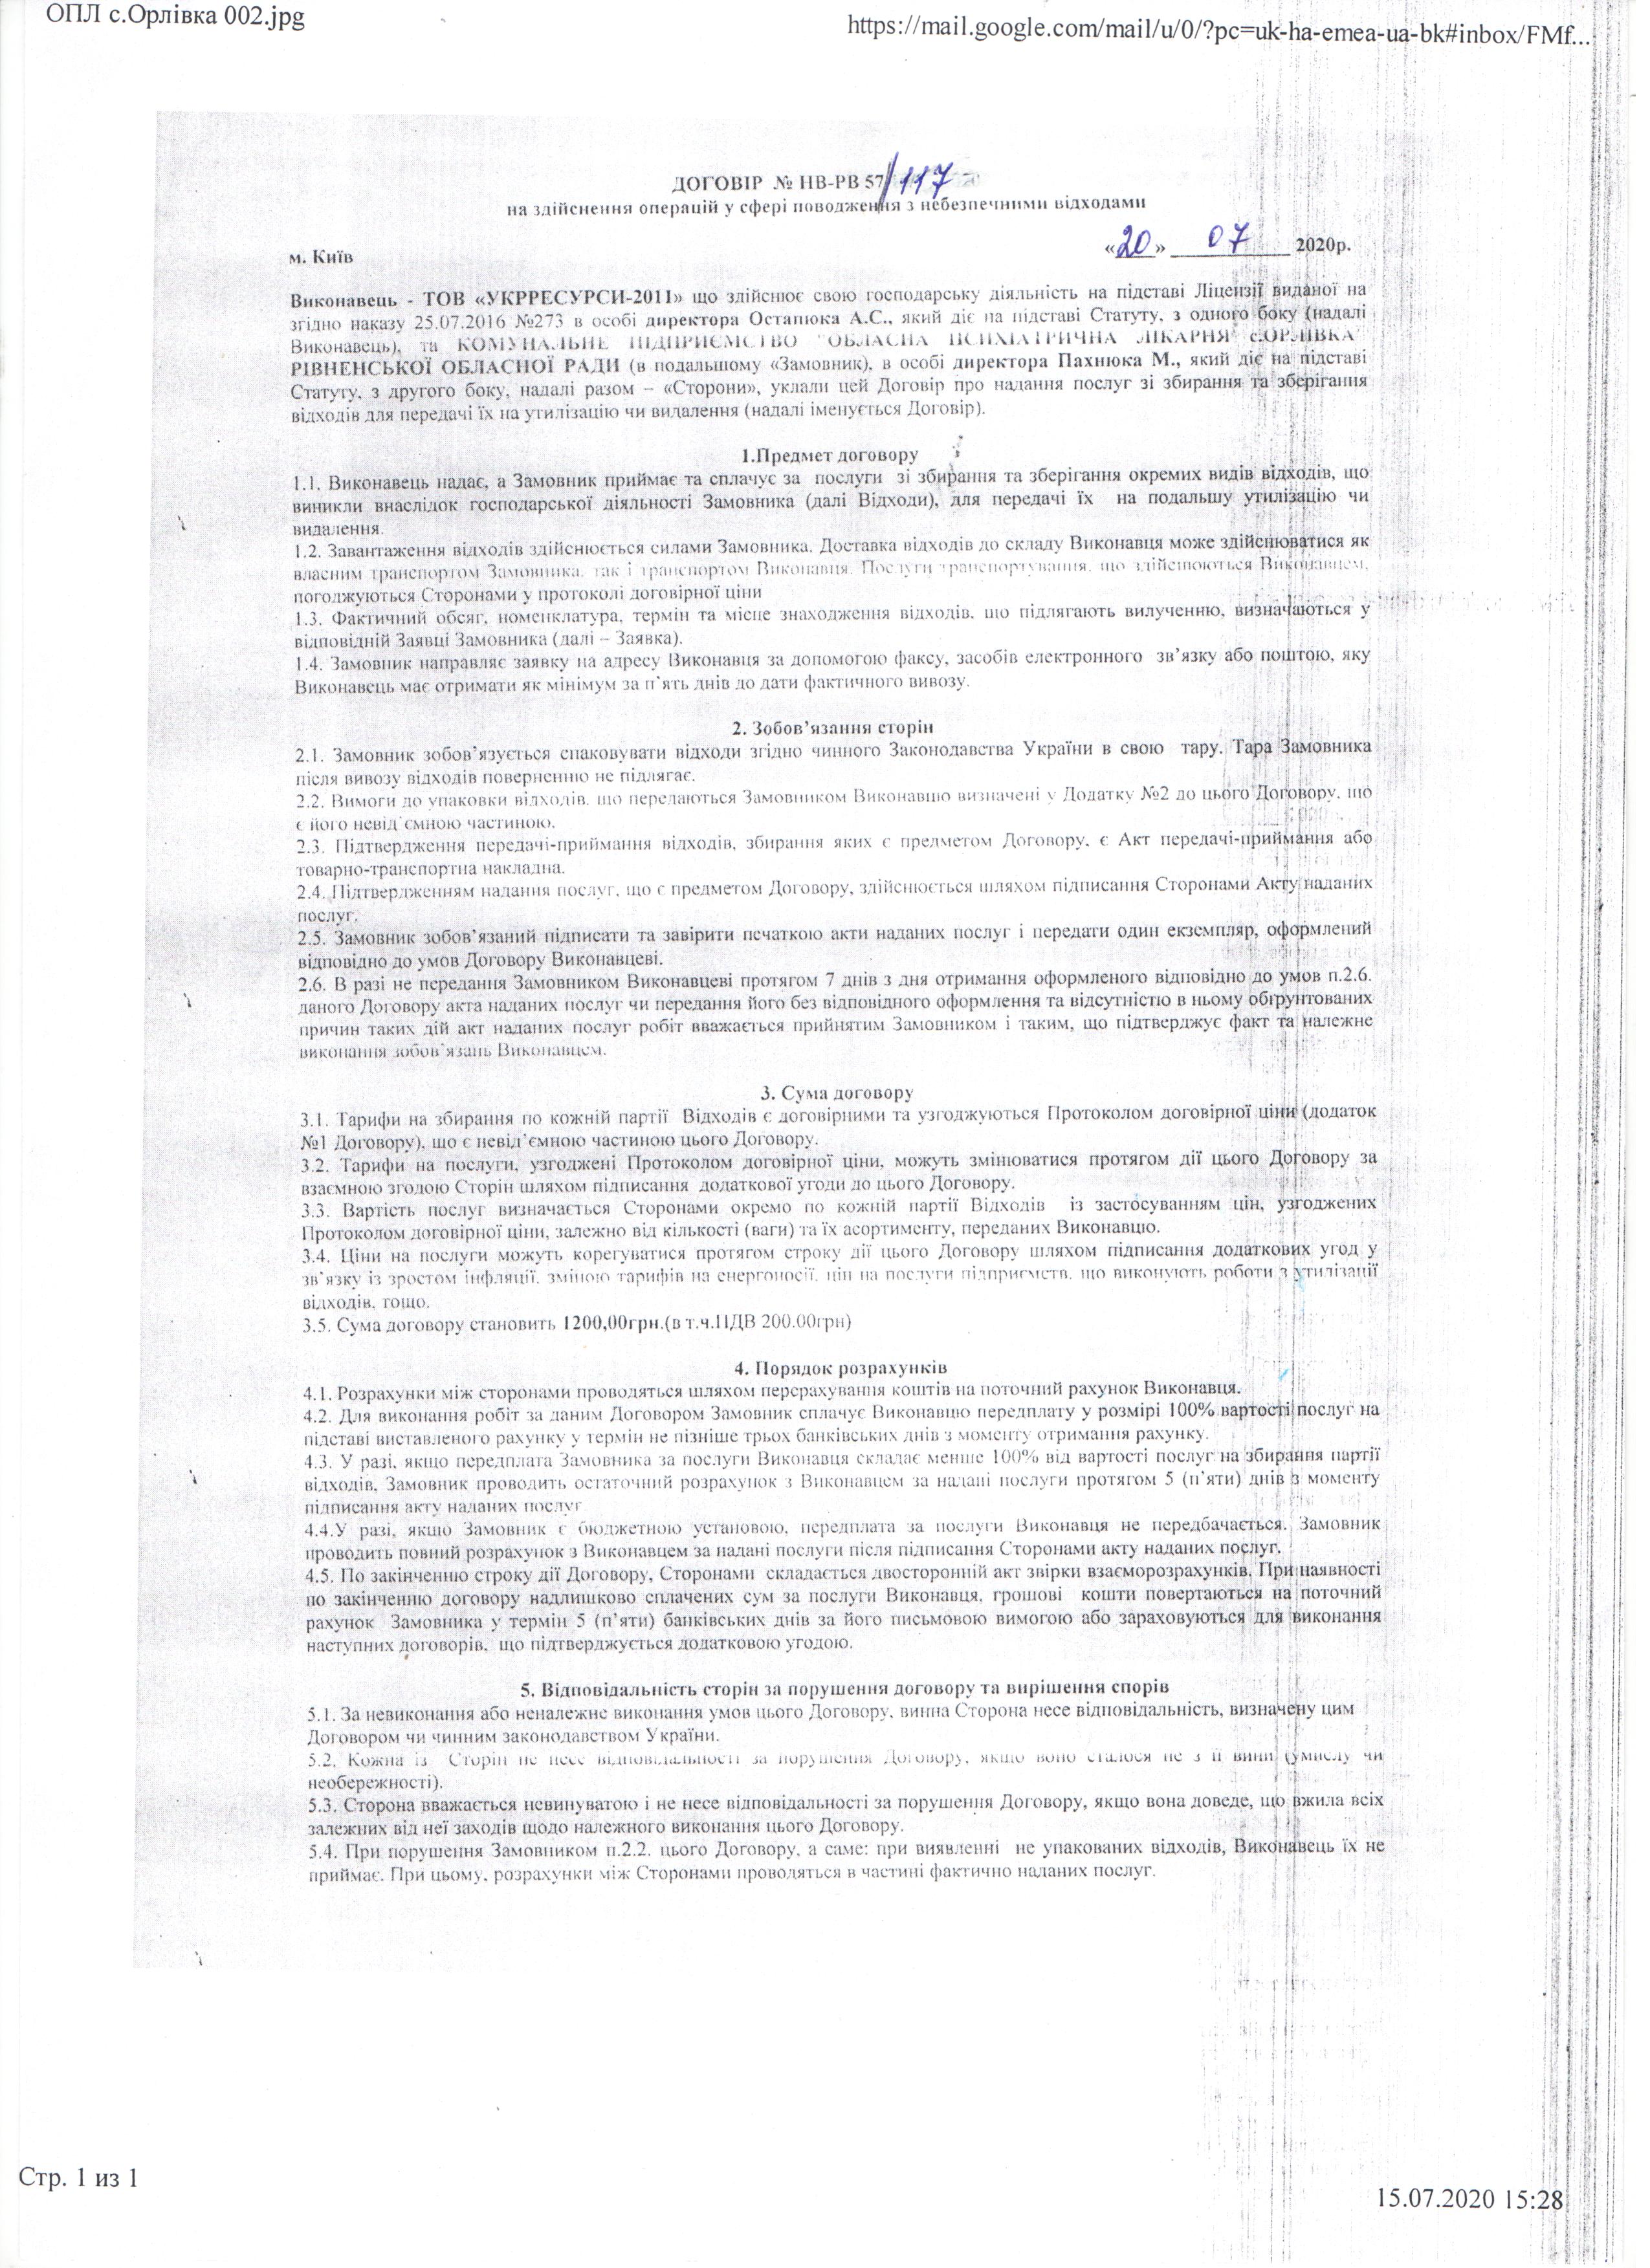 Договір №НВ-РВ 57/117 від 20.07.2020 р.